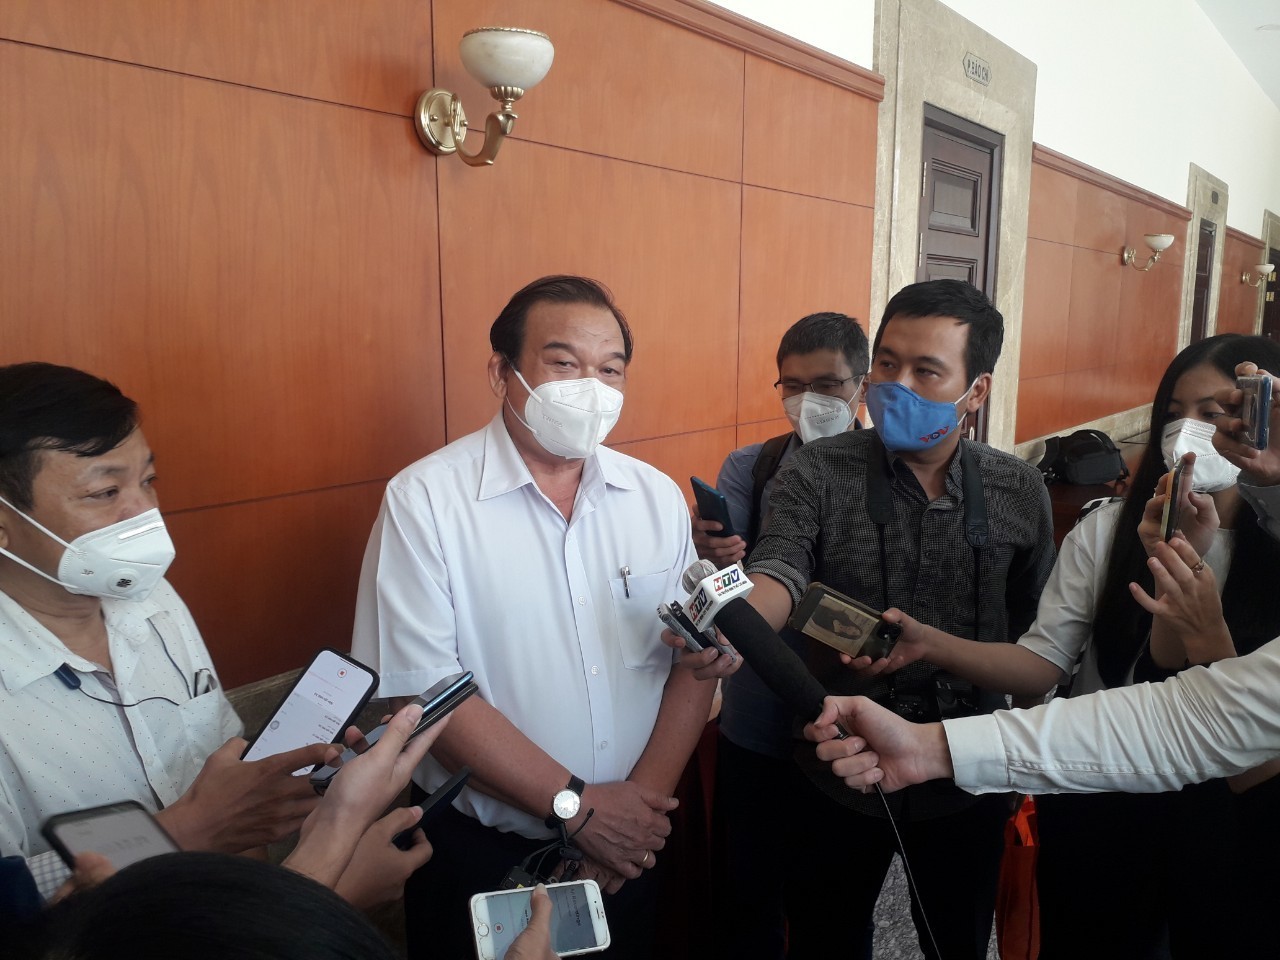 Bí thư TP.HCM nói về quy trình xem xét vụ giám đốc sở Lê Minh Tấn bị tố